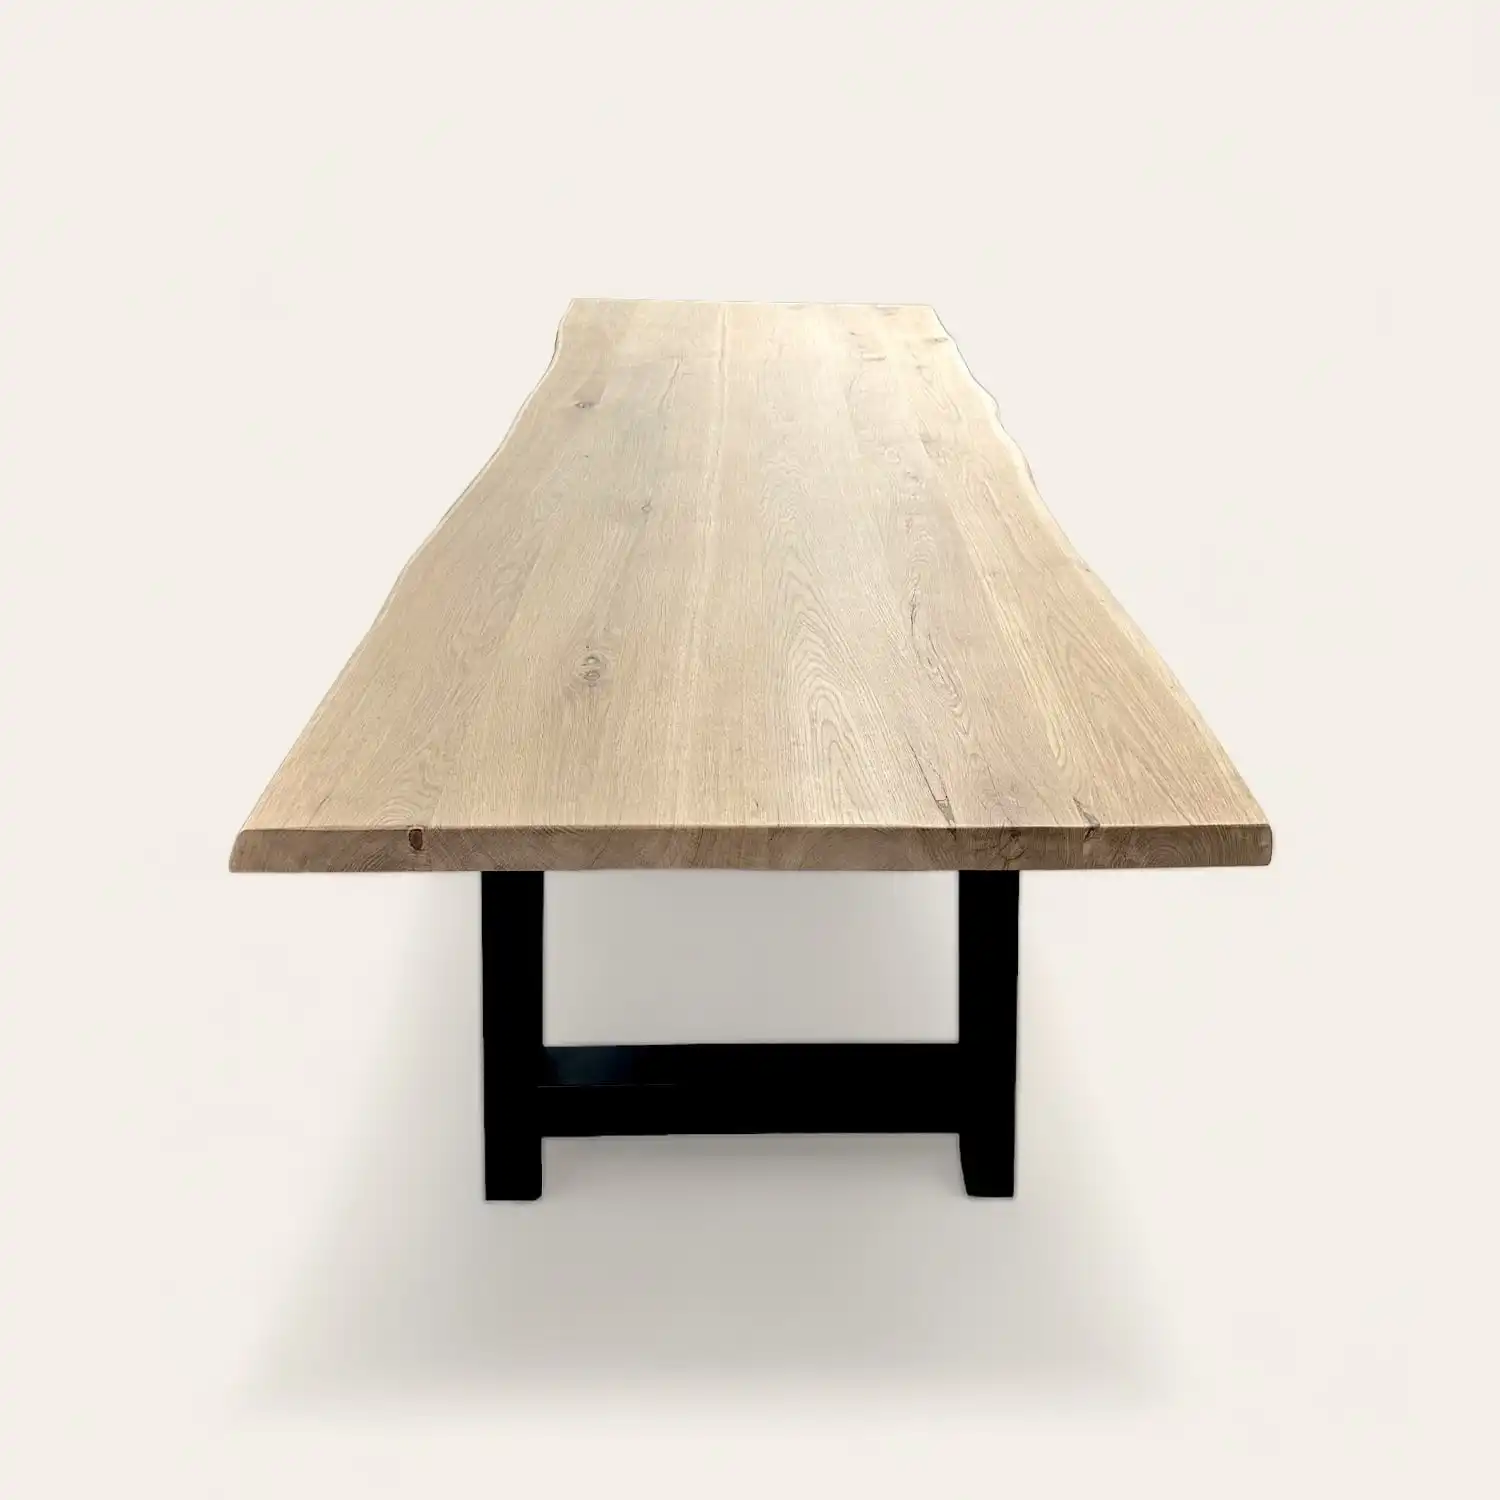  Une table à manger en vieux chêne avec une base noire. 